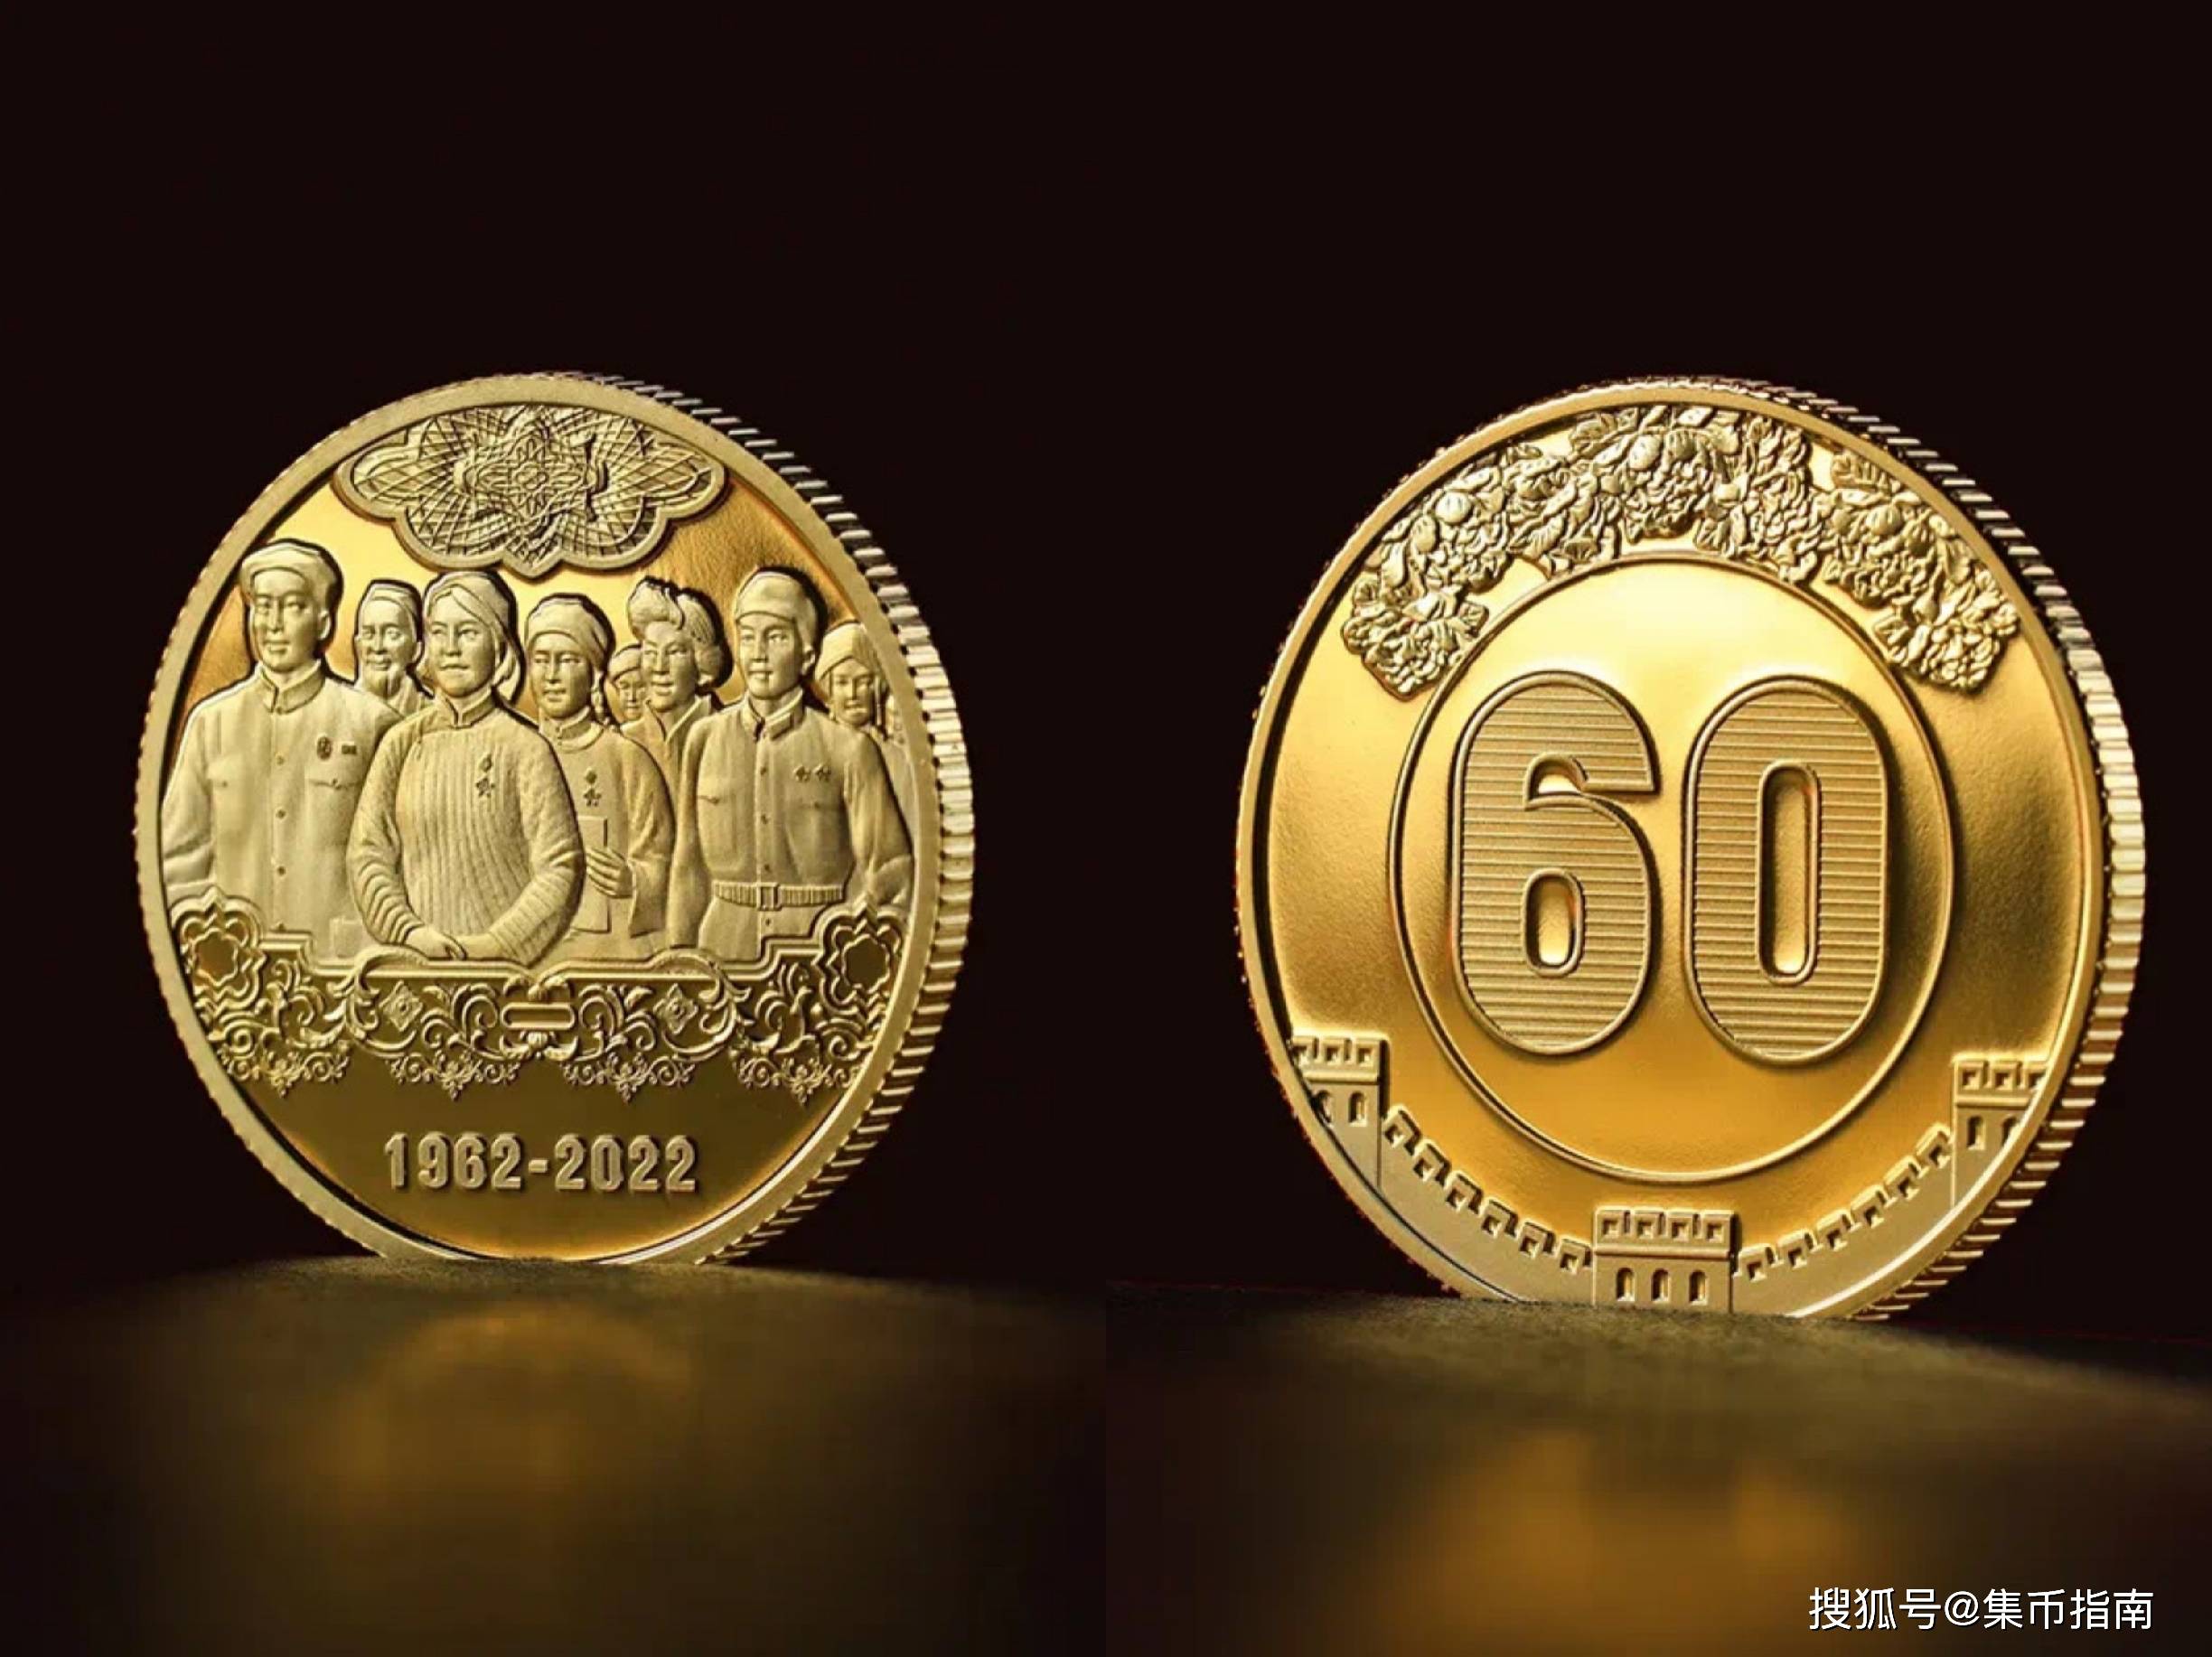 中国钱币有限公司装帧出品第三套人民币发行60周年纪念章一套,该套